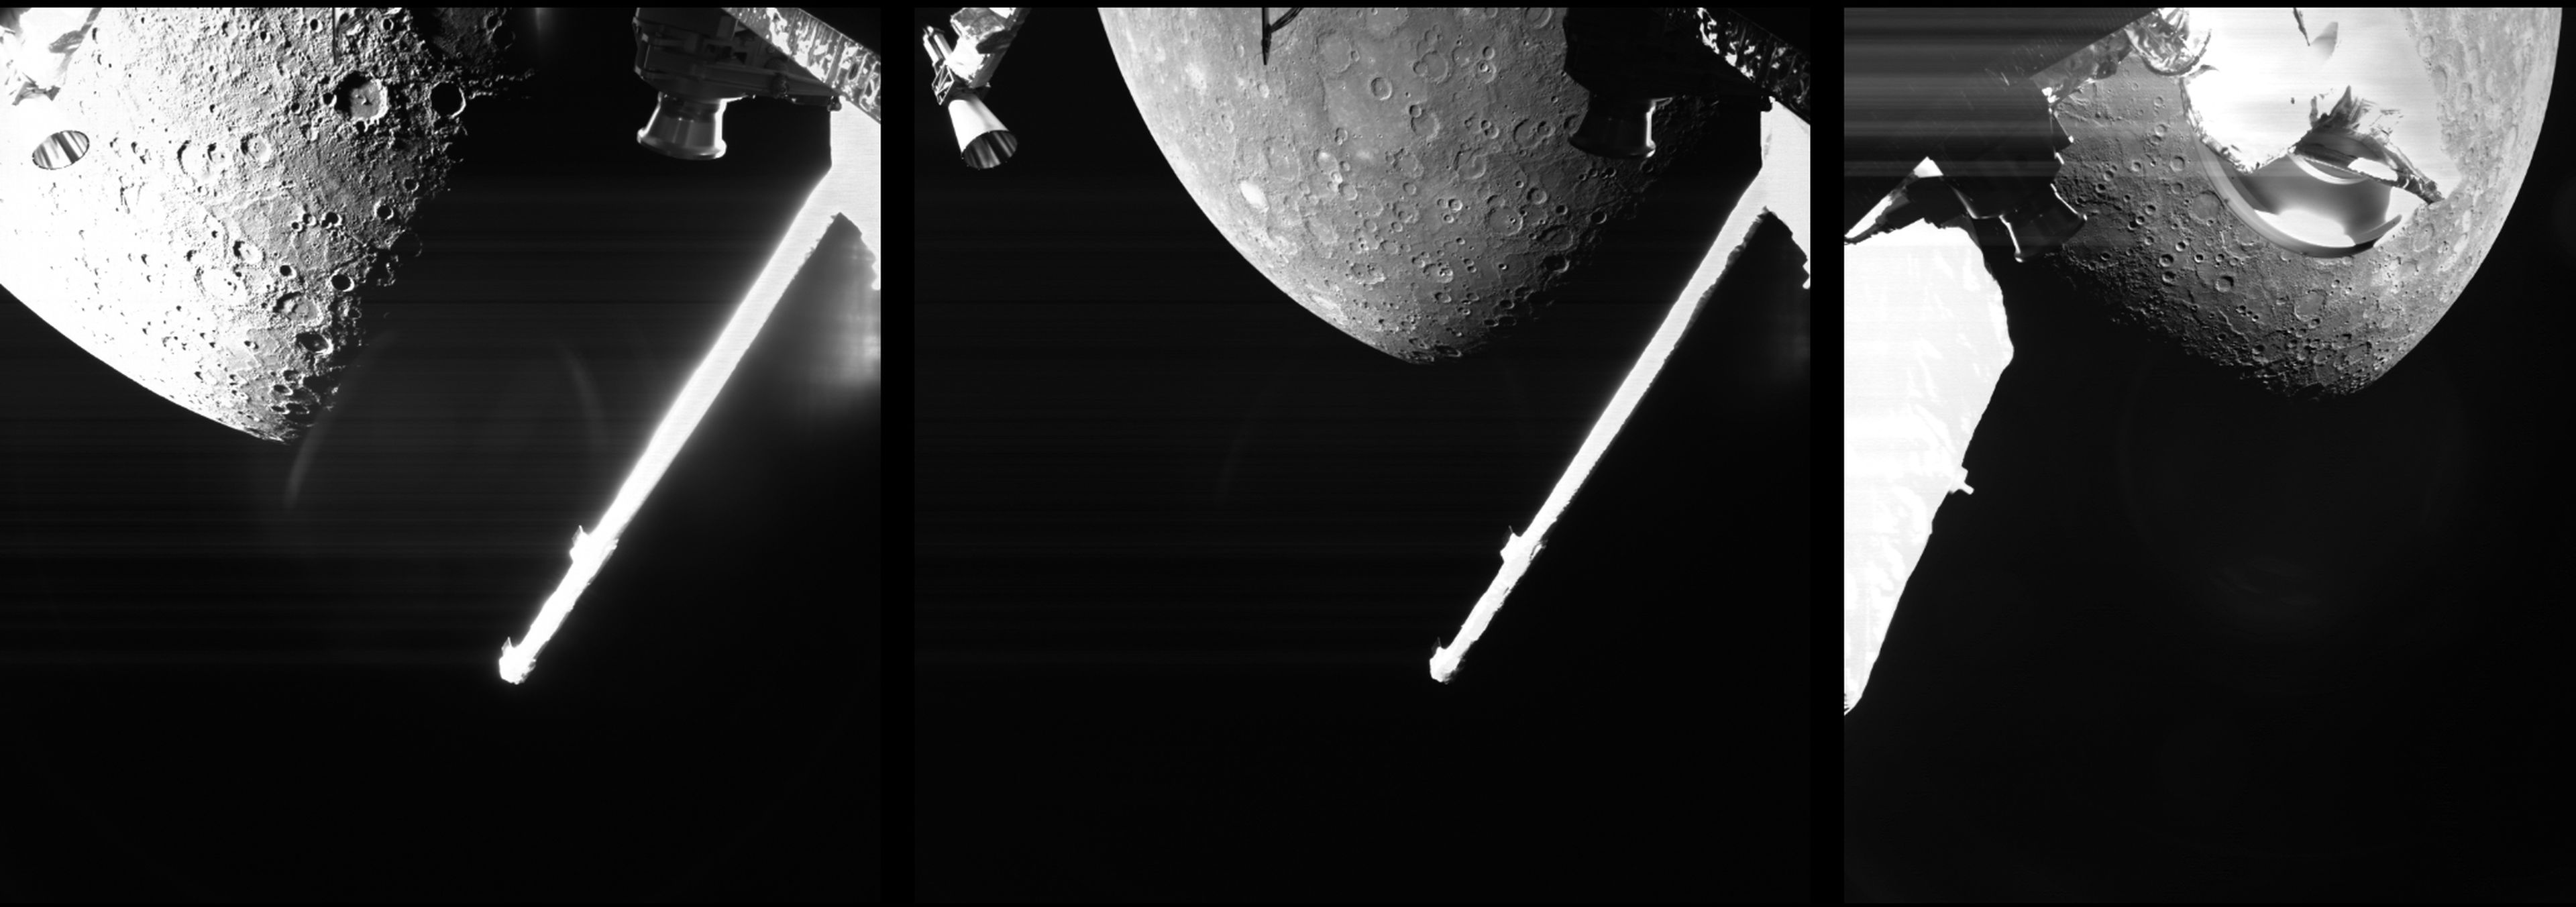 Tras tres años de viaje, la sonda europea BepiColombo envía la primera imagen de Mercurio